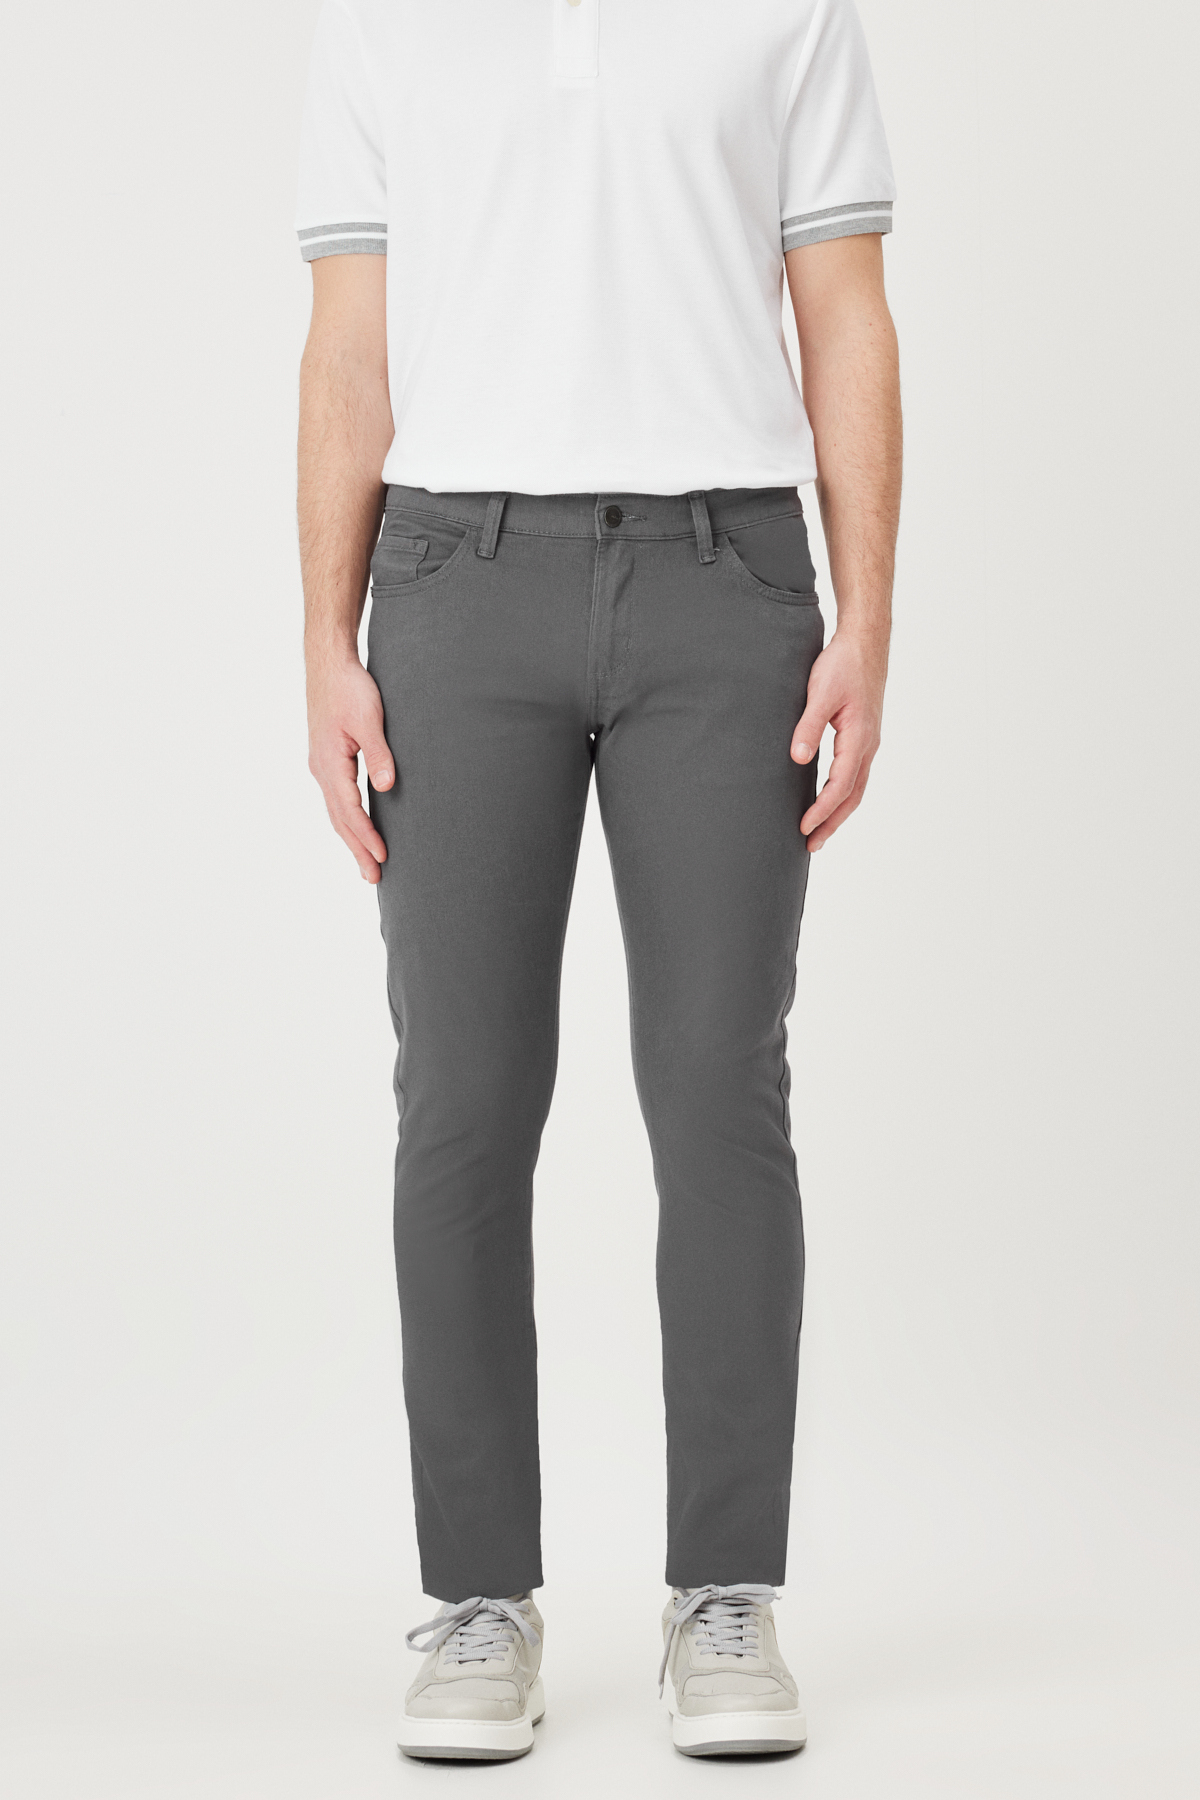 Levně AC&Co / Altınyıldız Classics Men's Anthracite Slim Fit Slim Fit 5 Pocket Cotton Canvas Flexible Chino Trousers